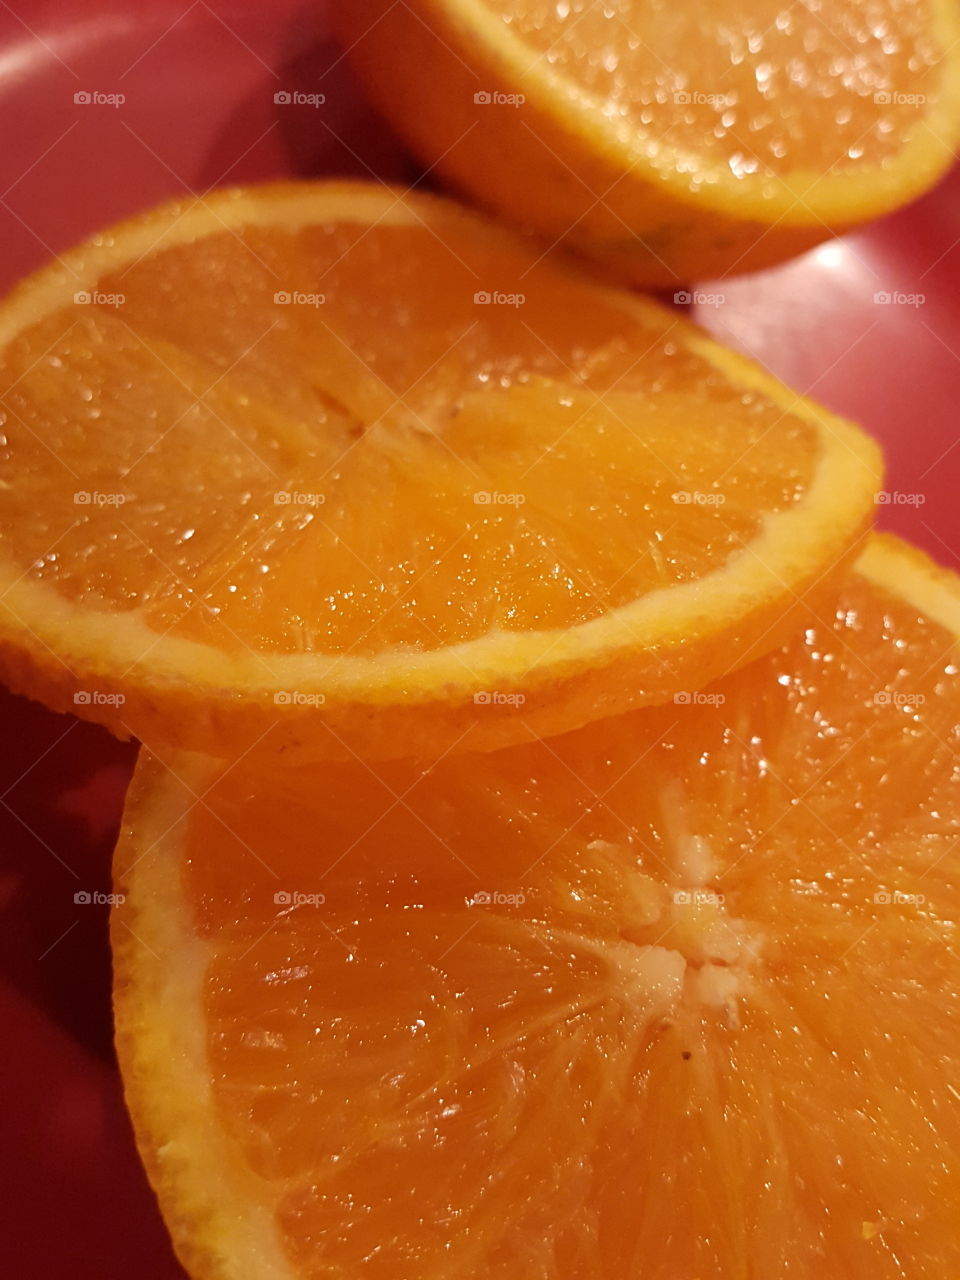 Orange Slices on Plate